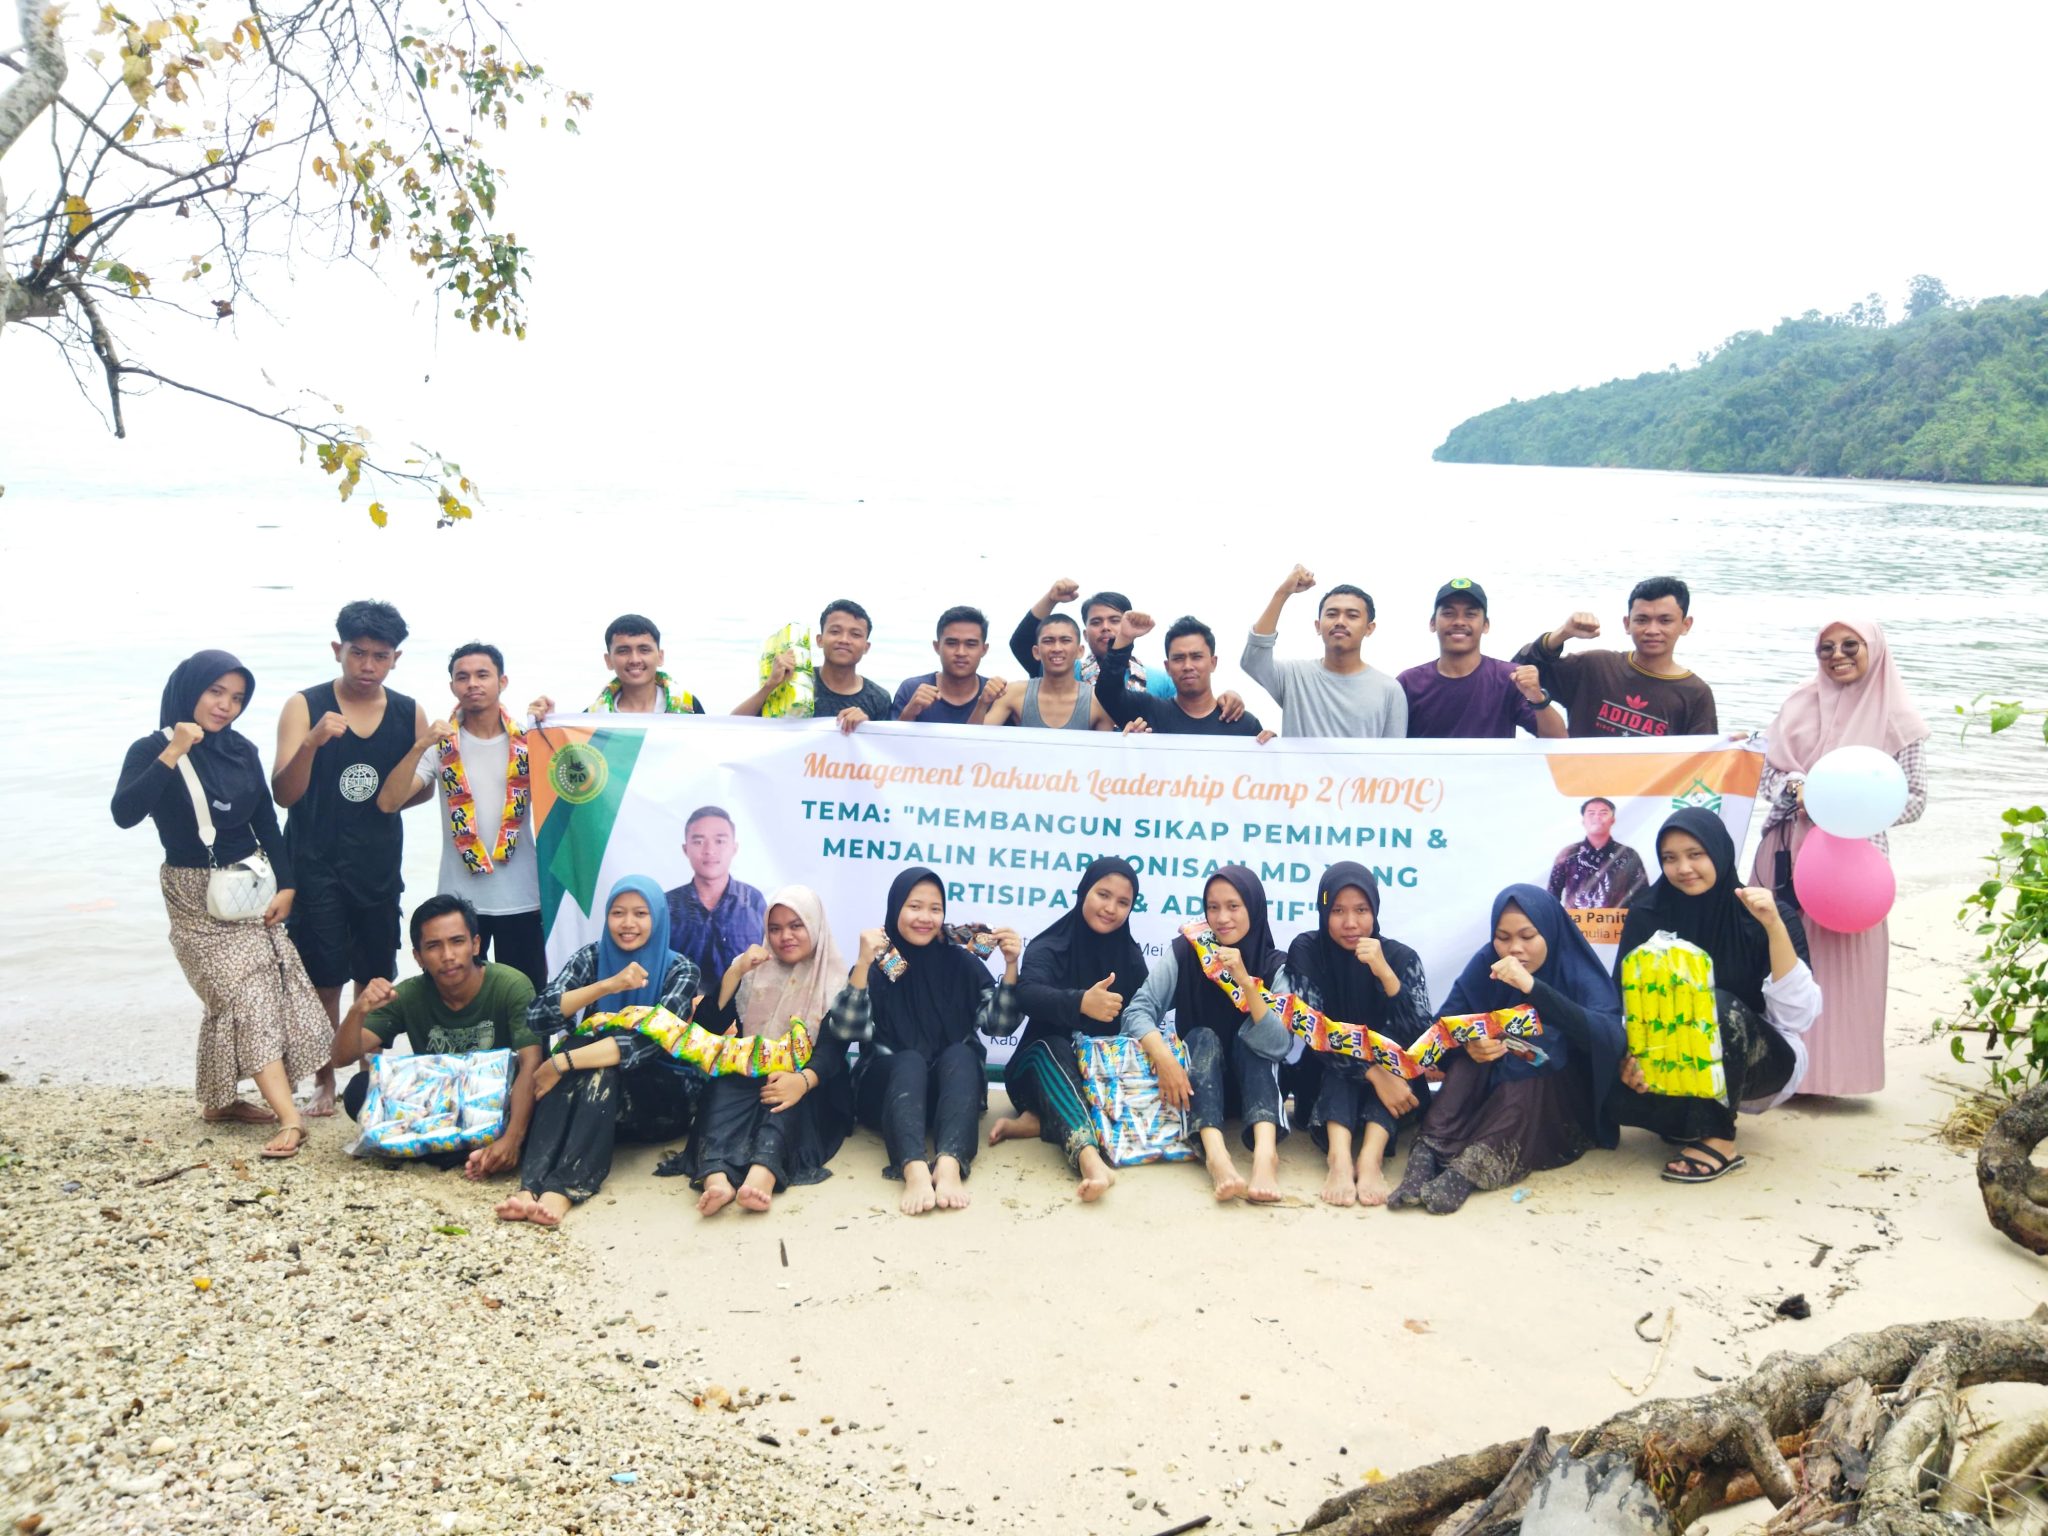 Kegiatan Manajemen Dakwah Leadership Camp (MDLC) II Berlangsung Sukses di Batu Gajah-Hajoran